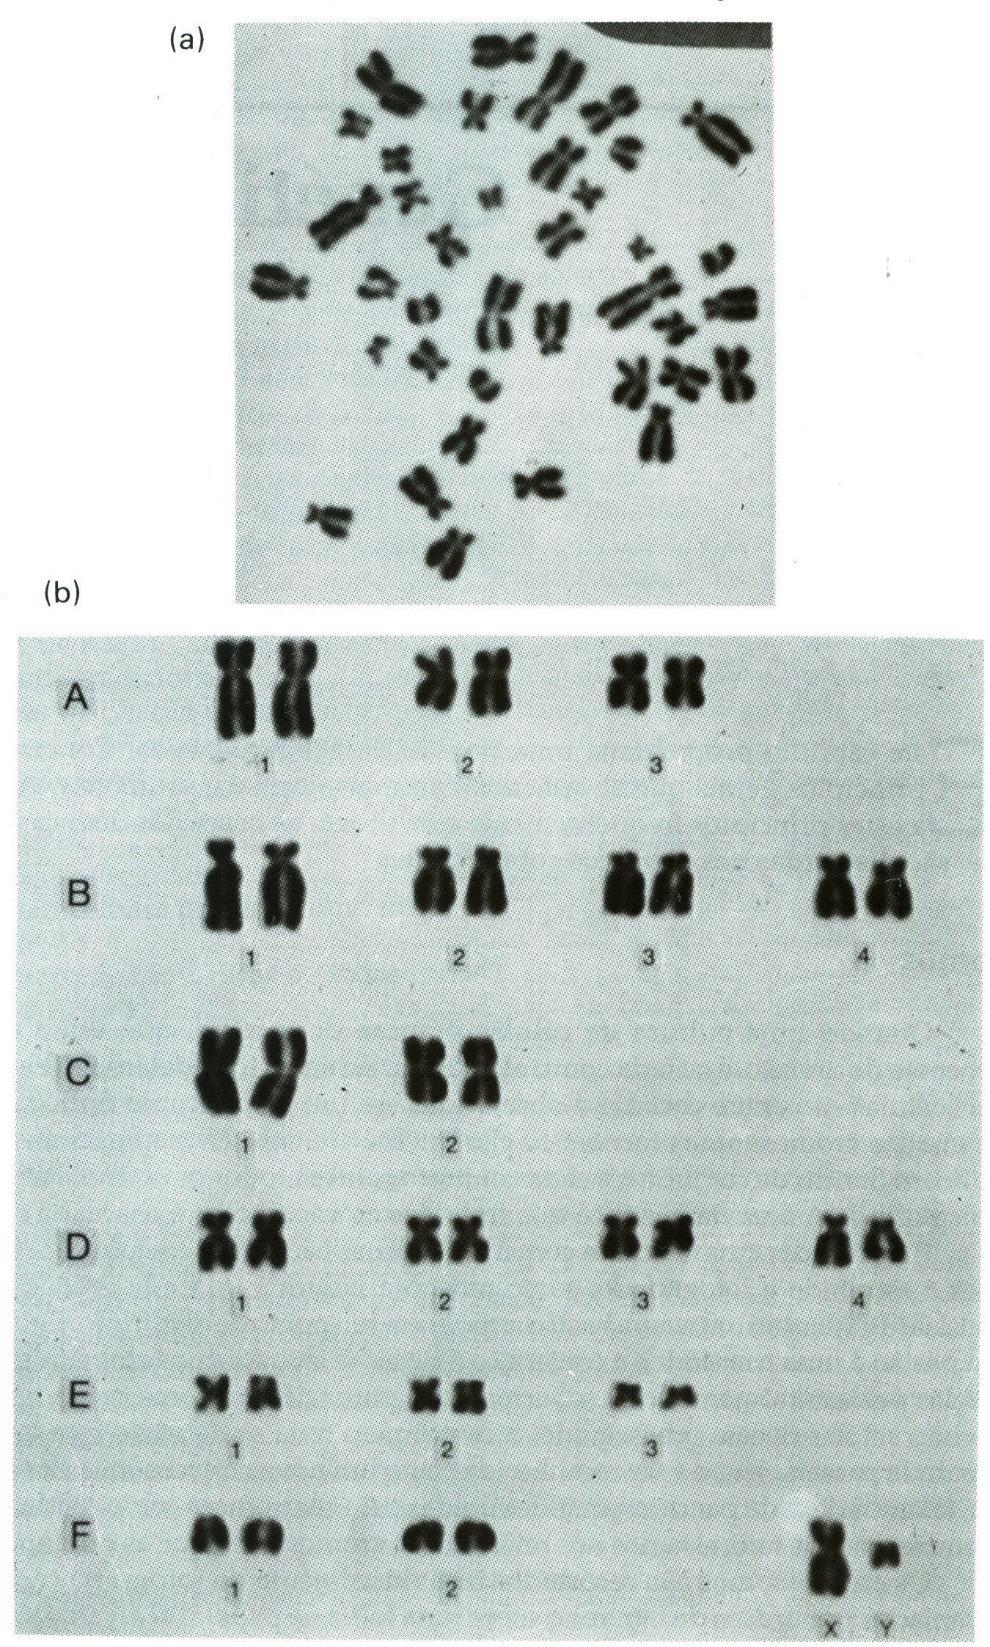 Os cromossomos de um gato macho, como são vistos ao microscópio ótico.